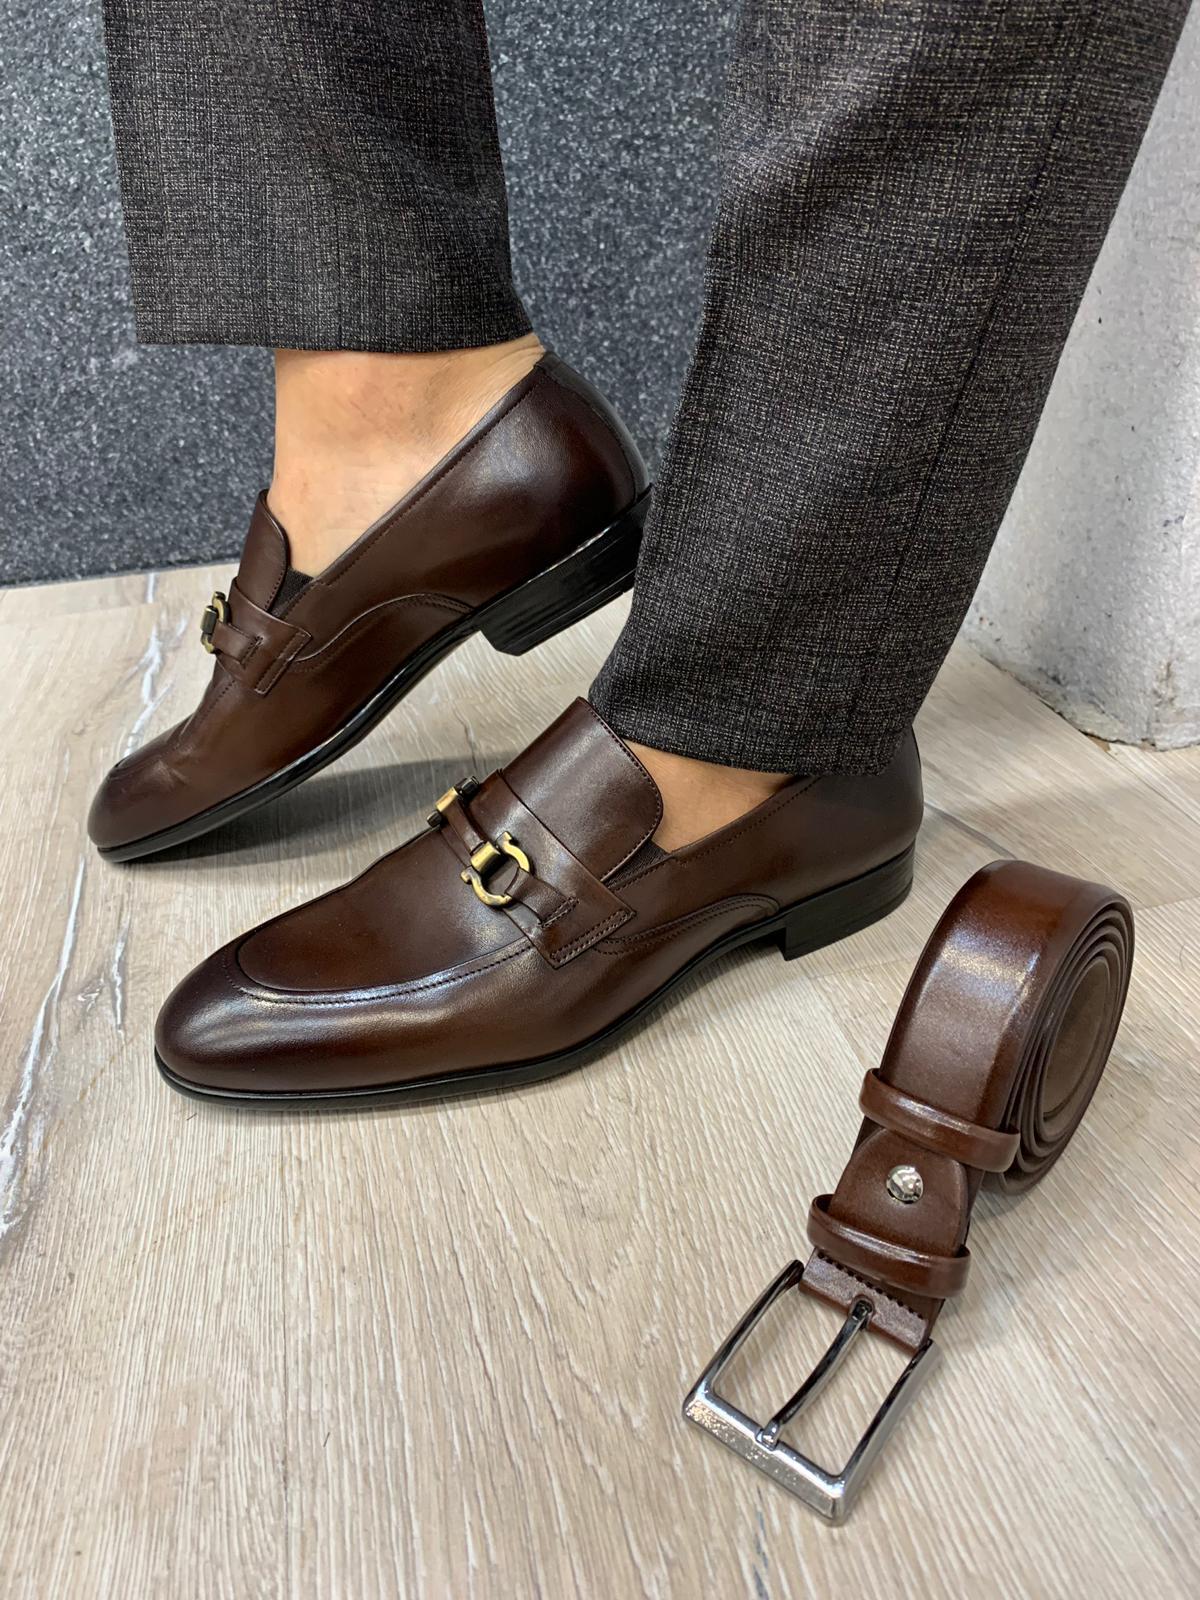 Buckled Suede Shoes Brown-baagr.myshopify.com-shoes2-BOJONI